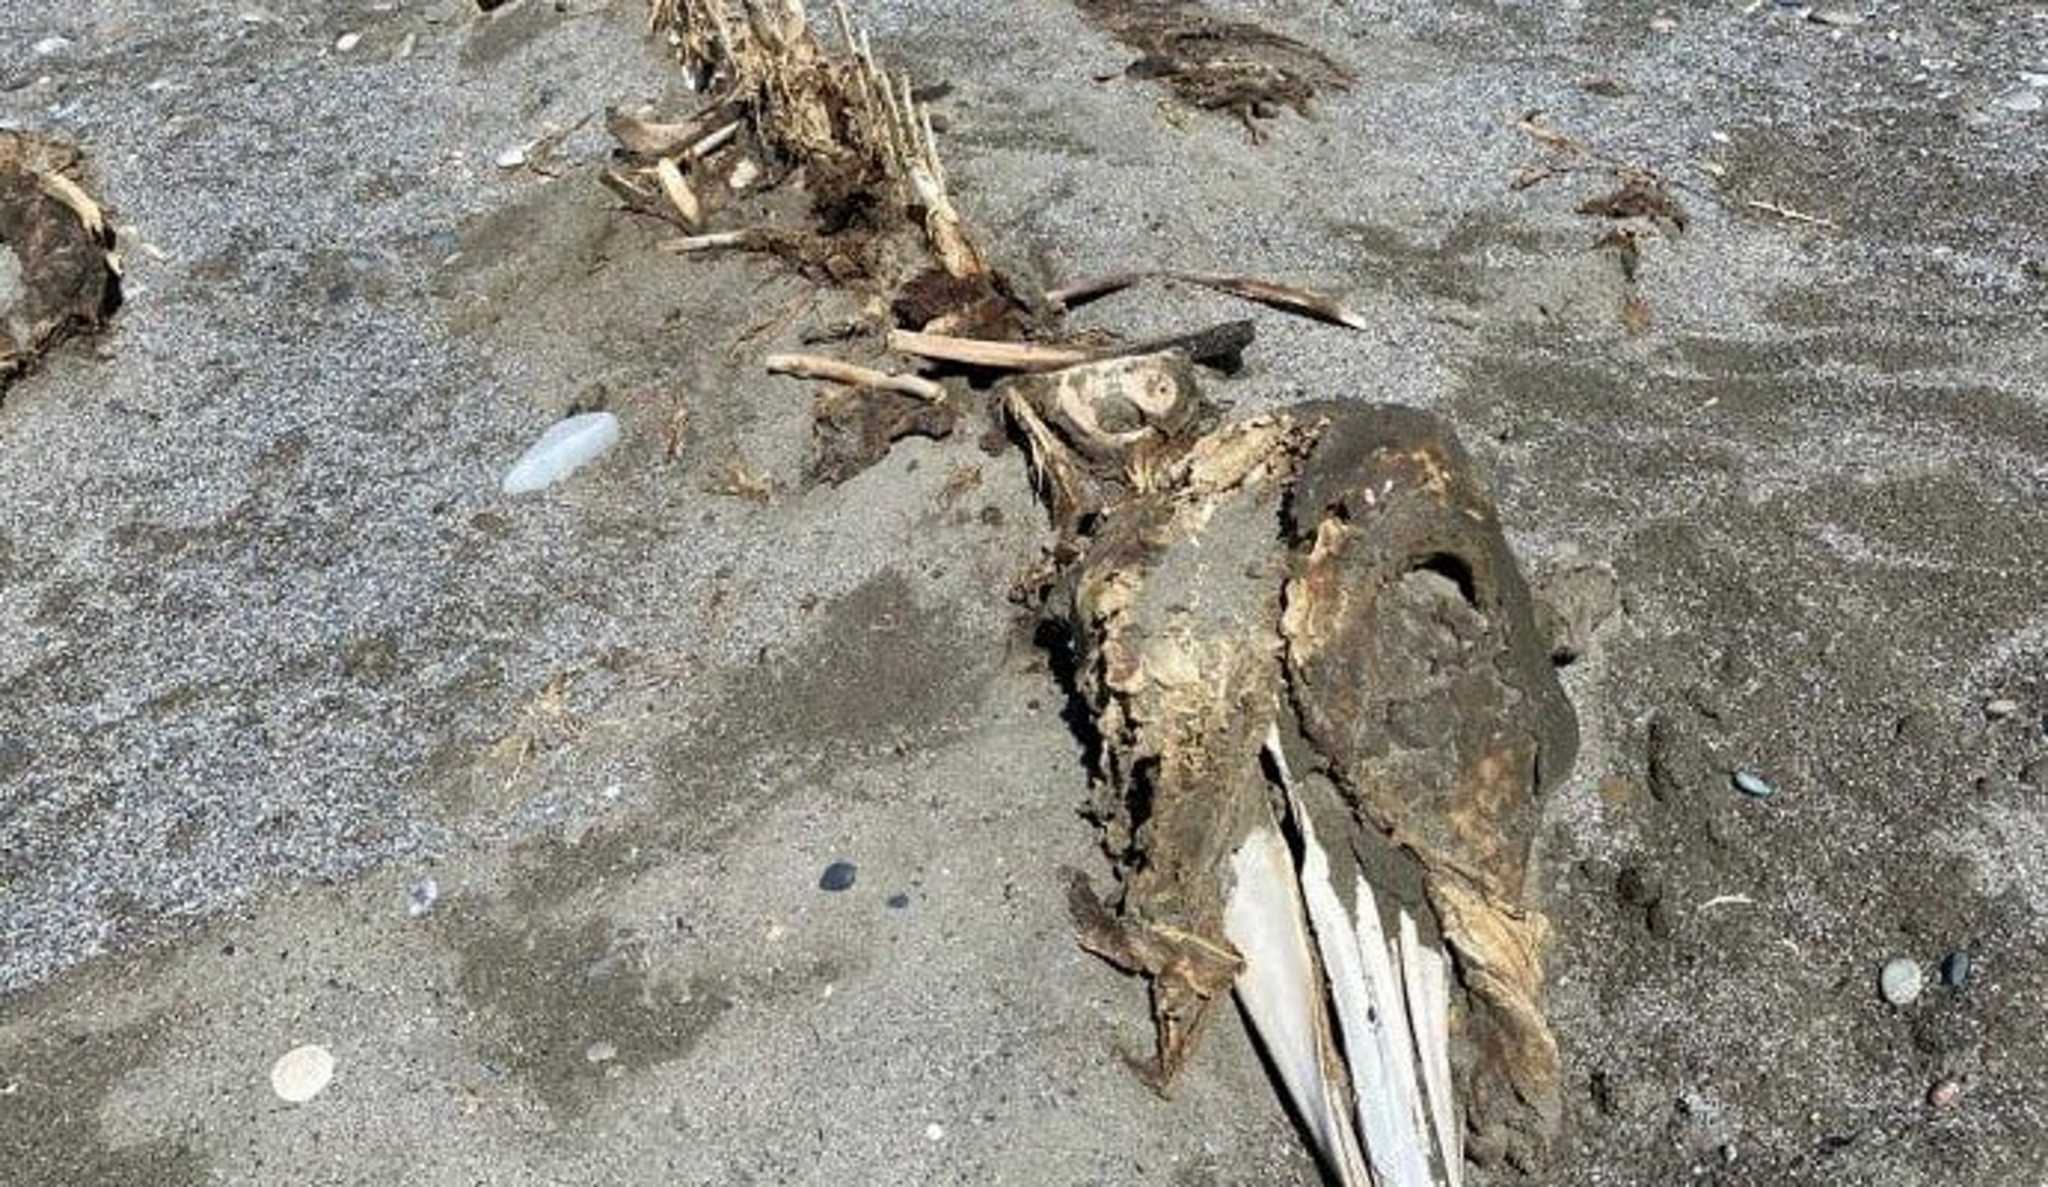 Ρέθυμνο: Περίεργος σκελετός τριών μέτρων ξεβράστηκε στην παραλία – Εικόνες μυστηρίου